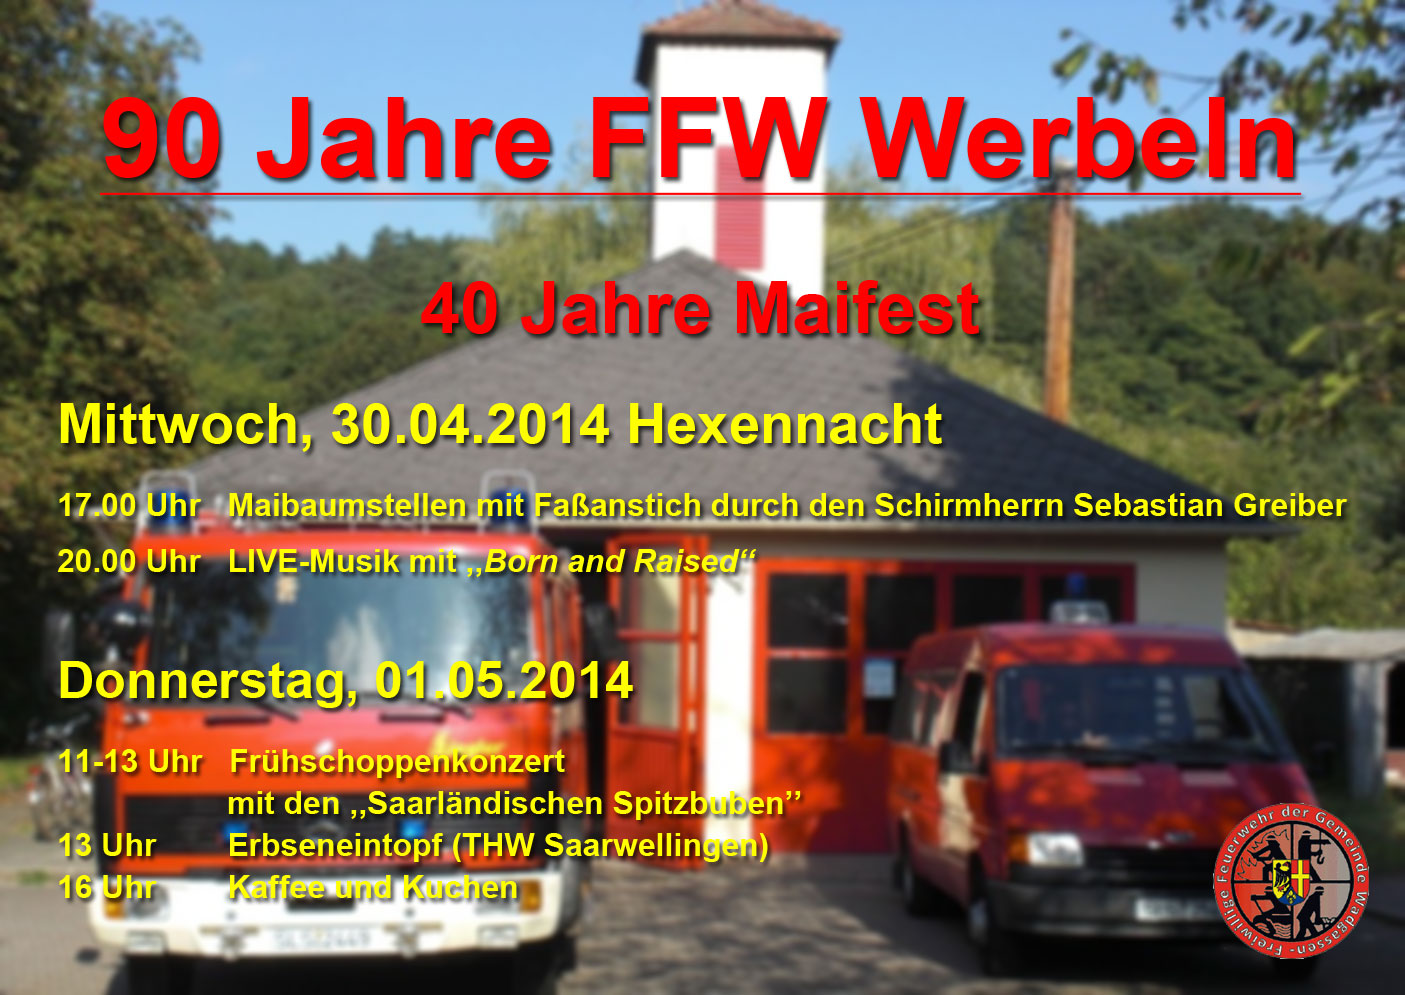 90 Jahre Freiwillige Feuerwehr Werbeln und 40 Jahre Maifest